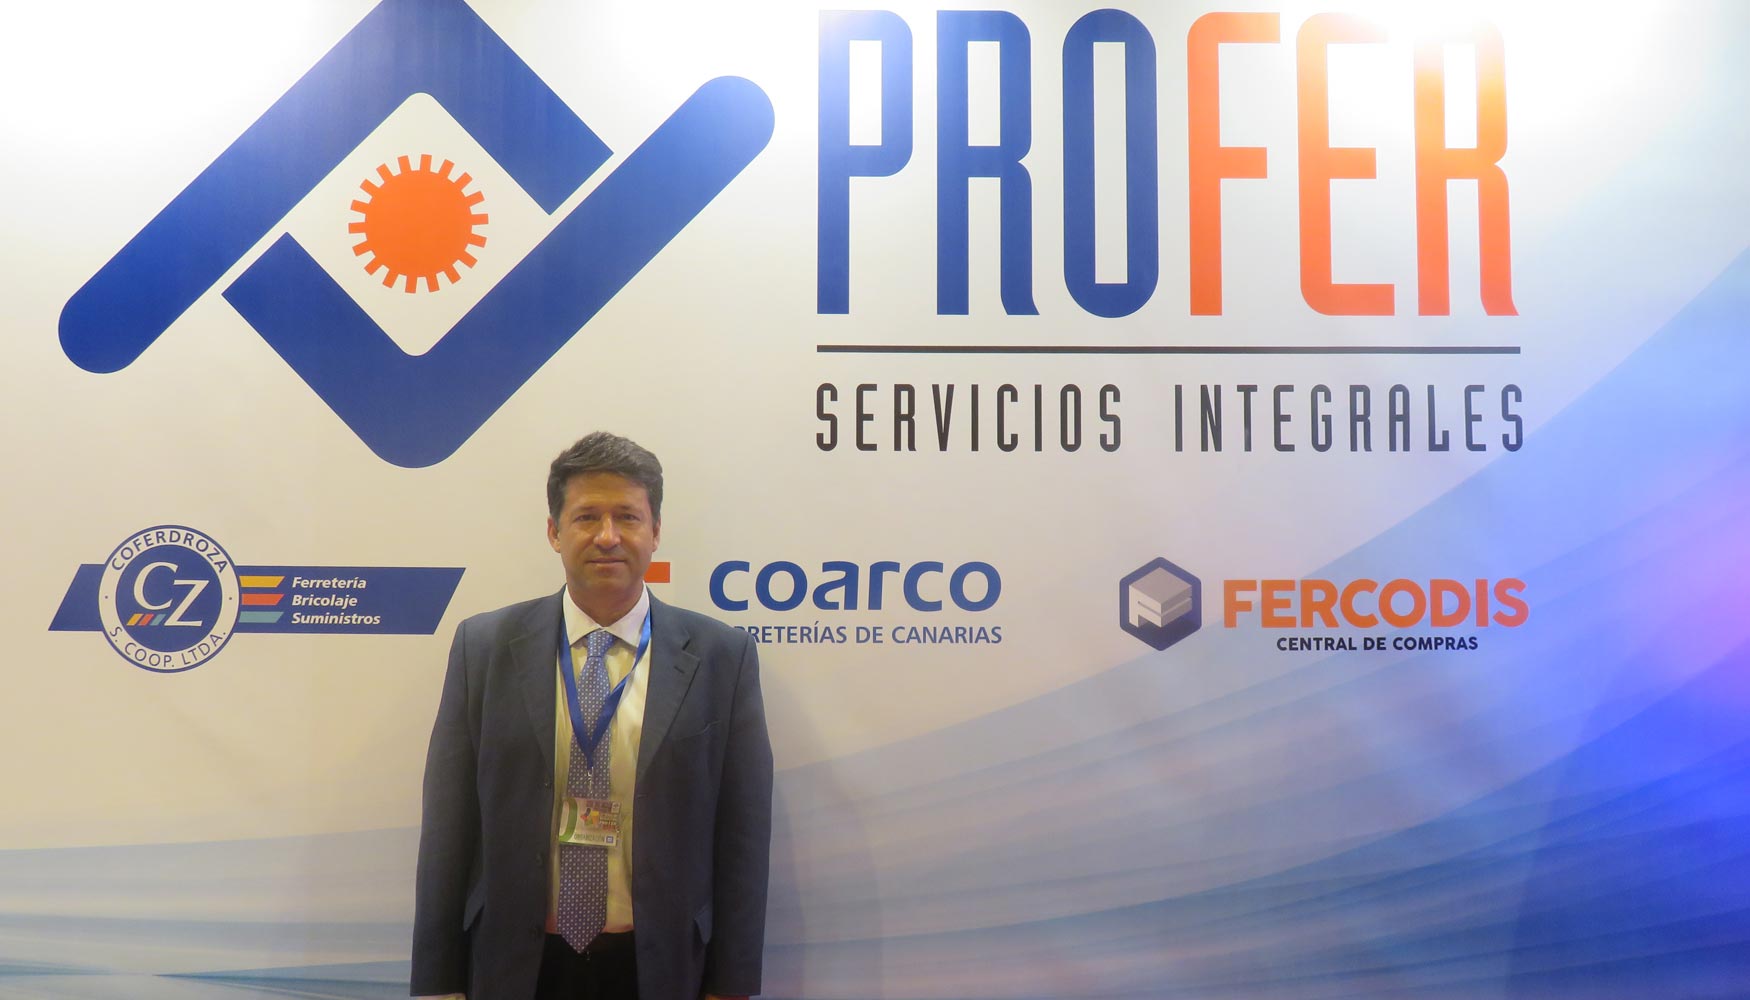 Juan Ignacio Prez-Nievas, director gerente de Coarco, en el stand de Profer de la III Feria de Negocios de esta central de compras...